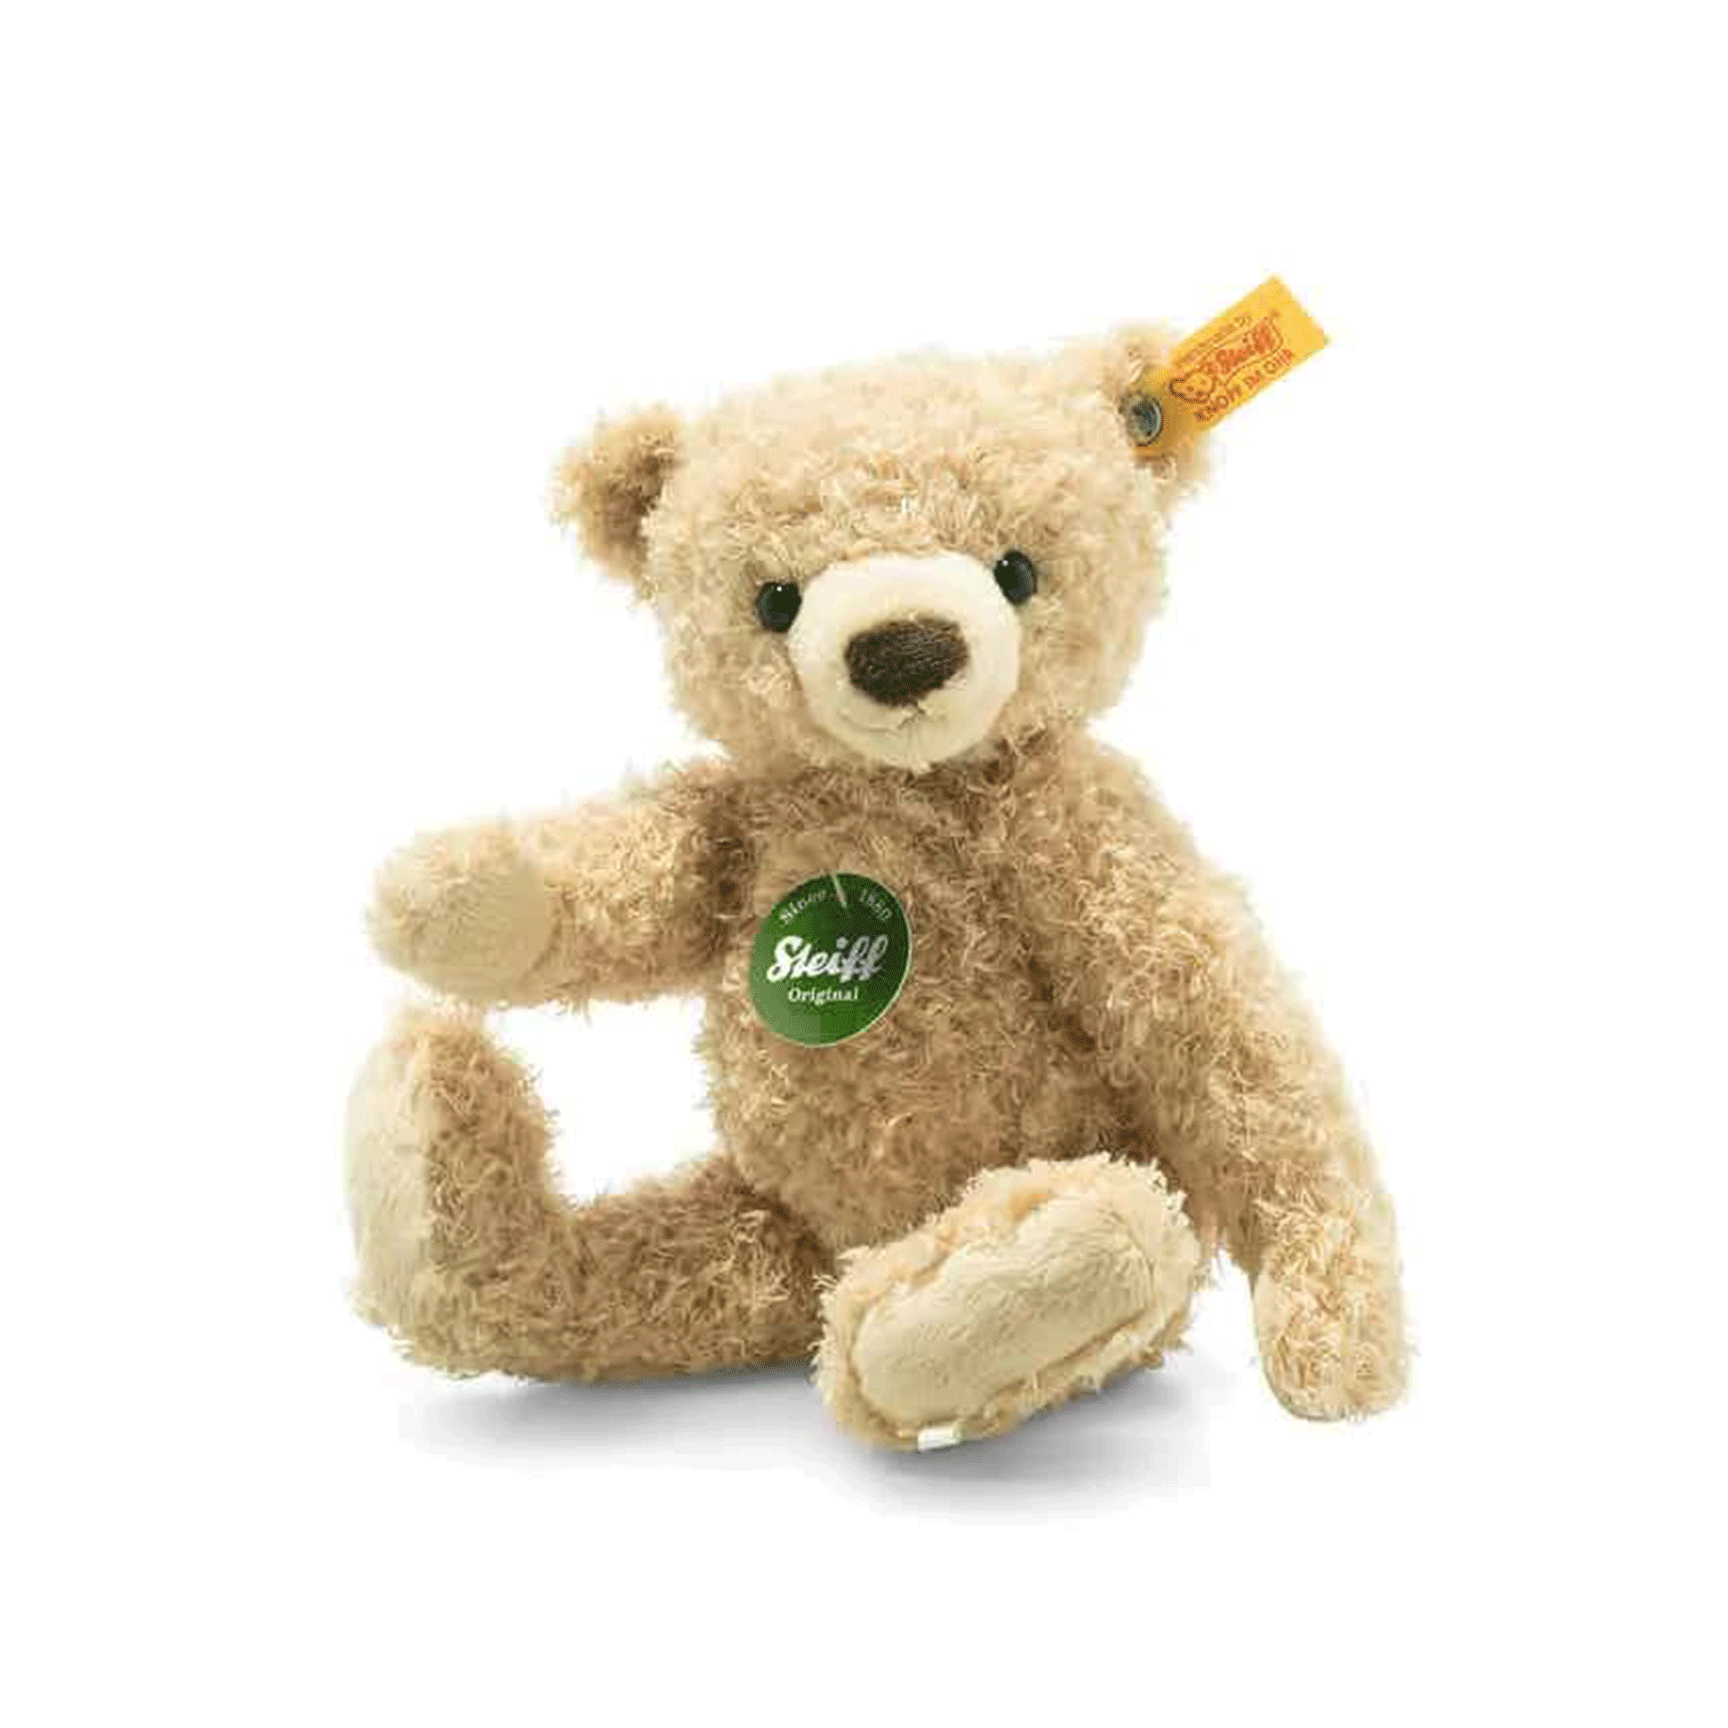 Steiff Max Teddy Teddy Bears 23002